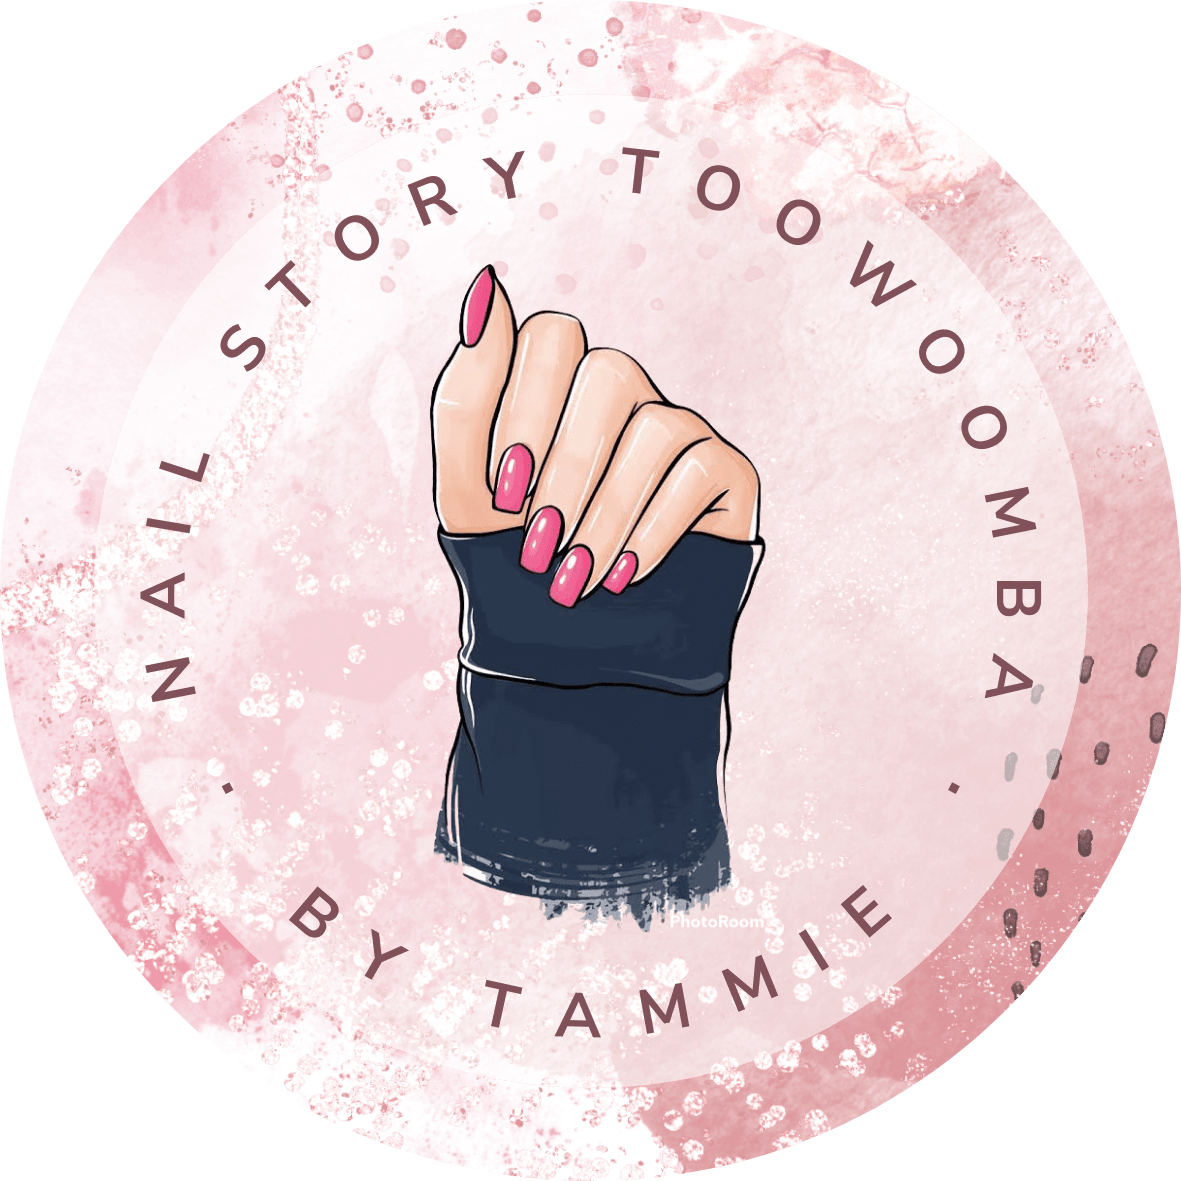 nail-polish-on-hands-feet-nail-story-toowoomba